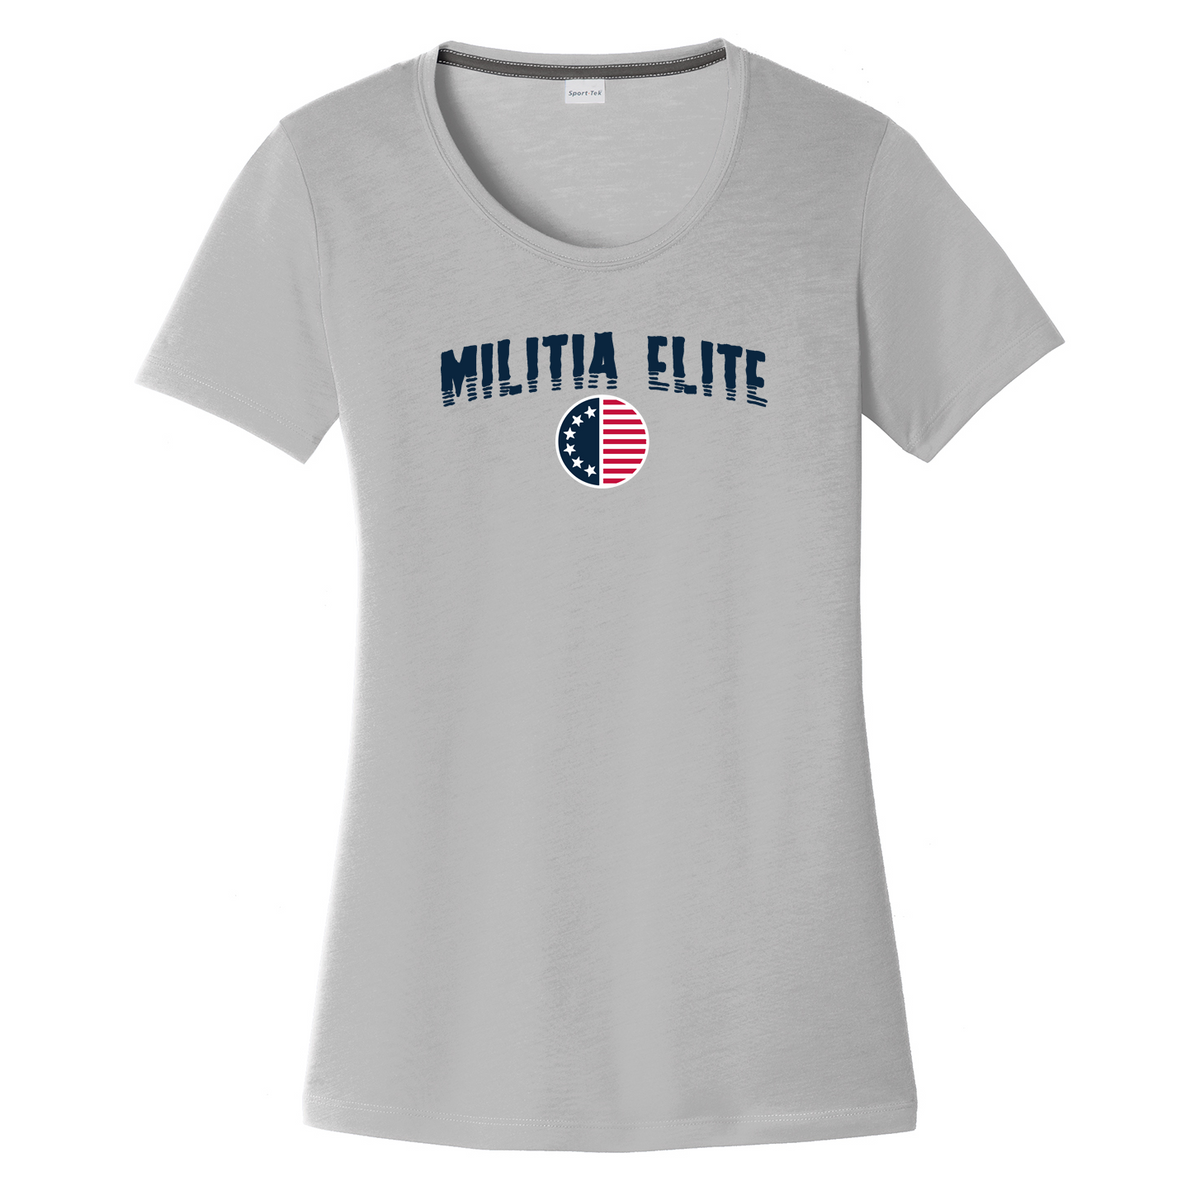 Militia Elite Women's CottonTouch Performance T-Shirt